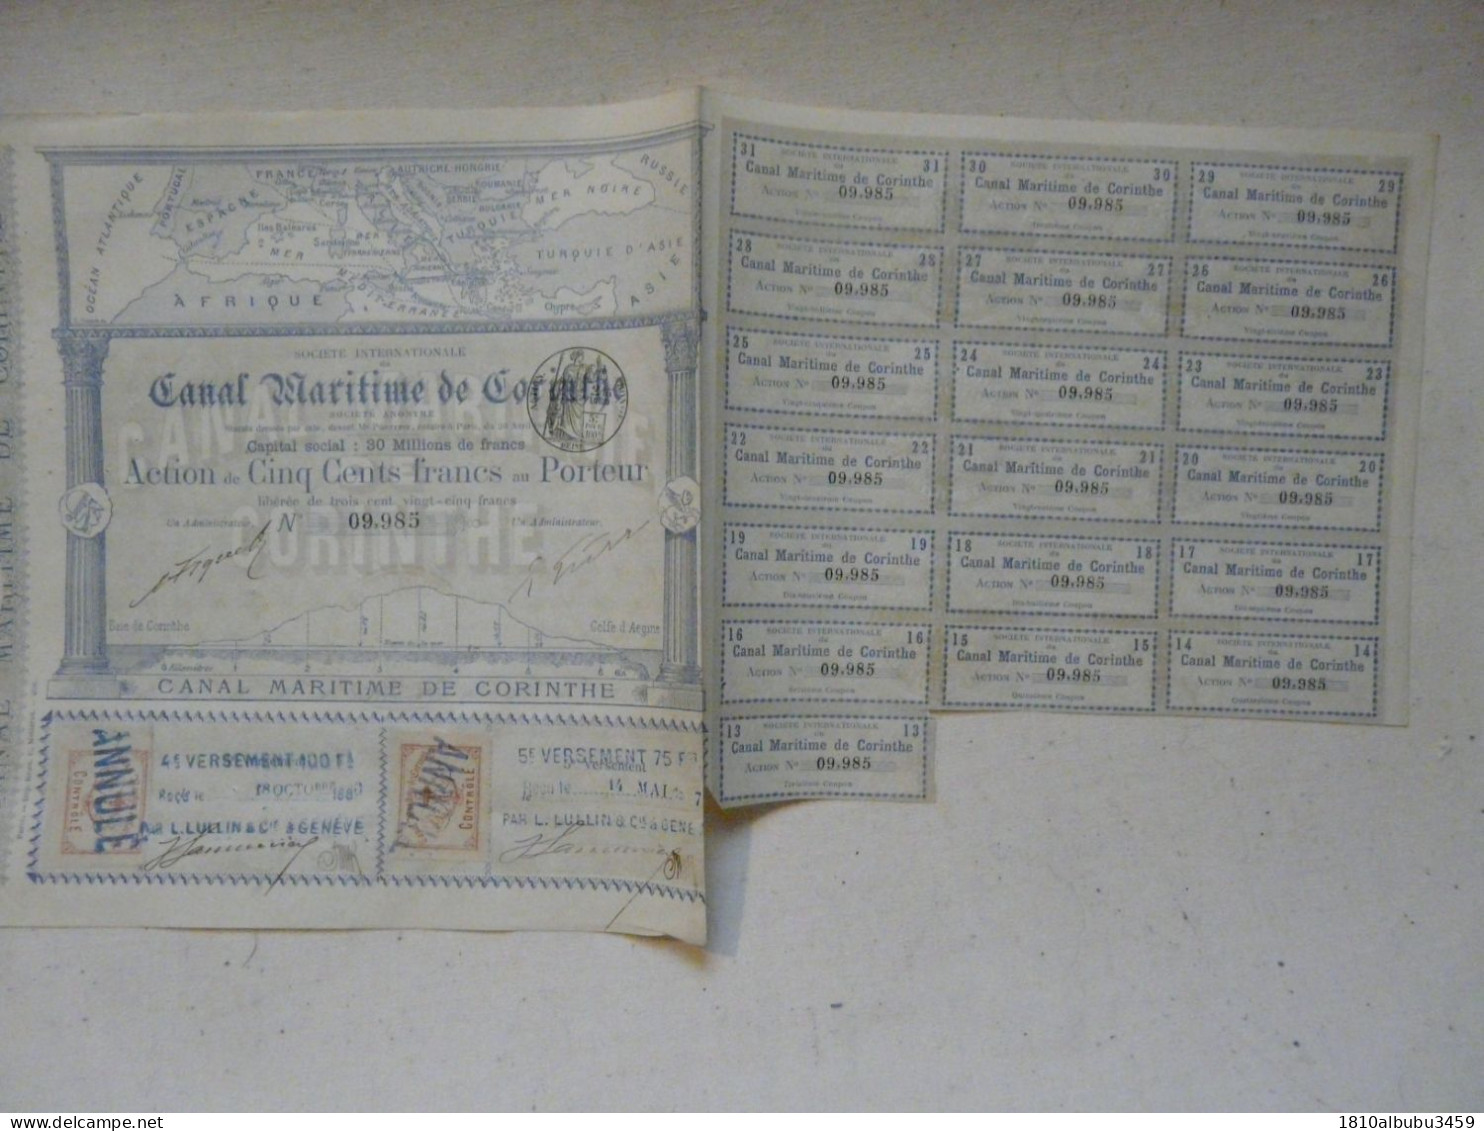 RARE - ACTION DE CINQ CENTS FRANCS - SOCIETE INTERNATIONALE DU CANAL MARITIME DE CORINTHE 1886-1887 - Navigation